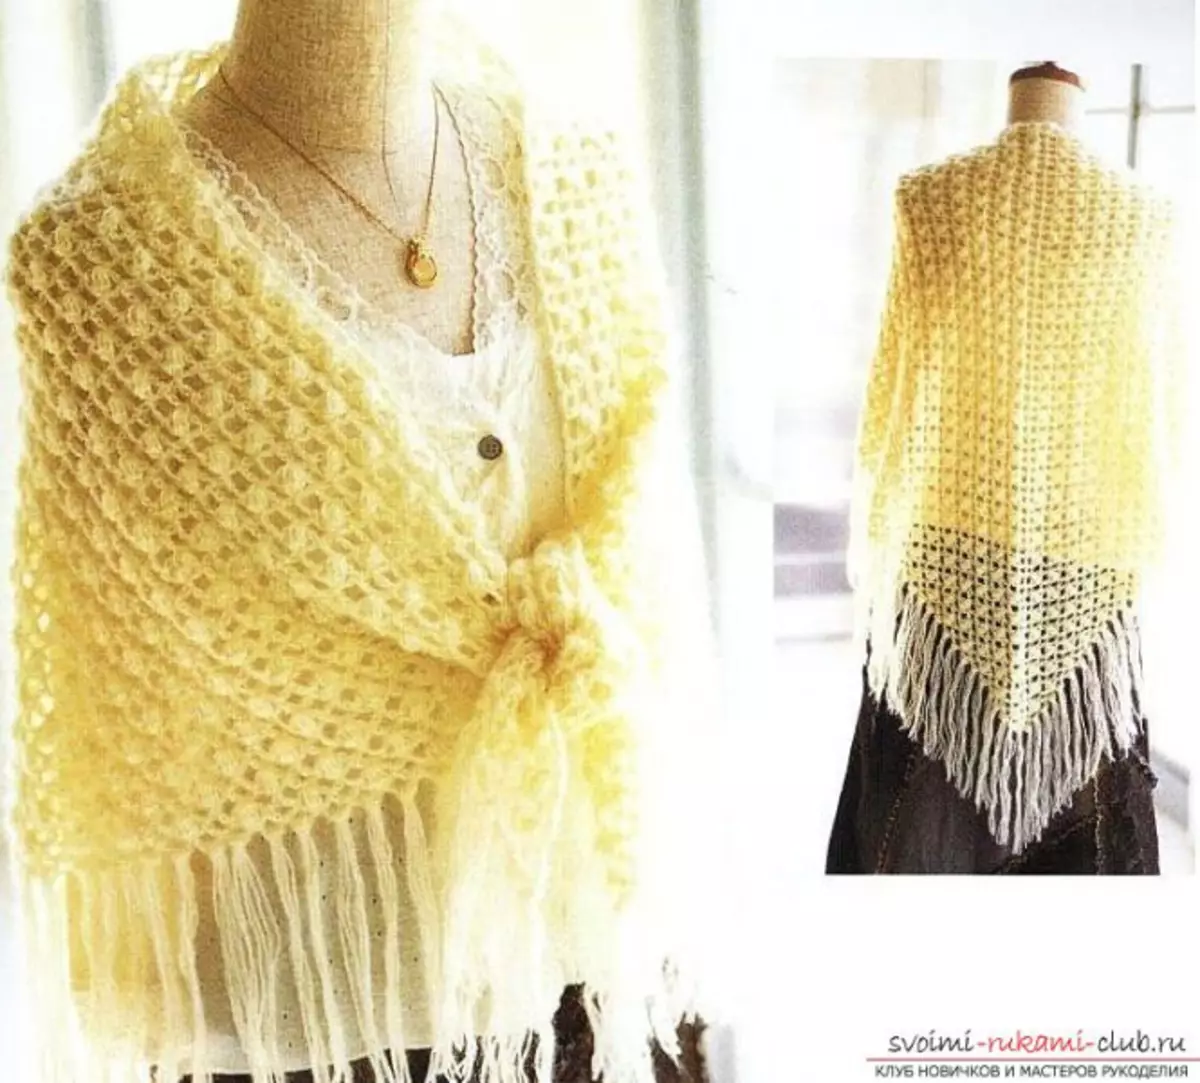 crochet ត្រីកោណ shawl ជាមួយនឹងគ្រោងការណ៍និងការពិពណ៌នាសម្រាប់អ្នកចាប់ផ្តើមដំបូង